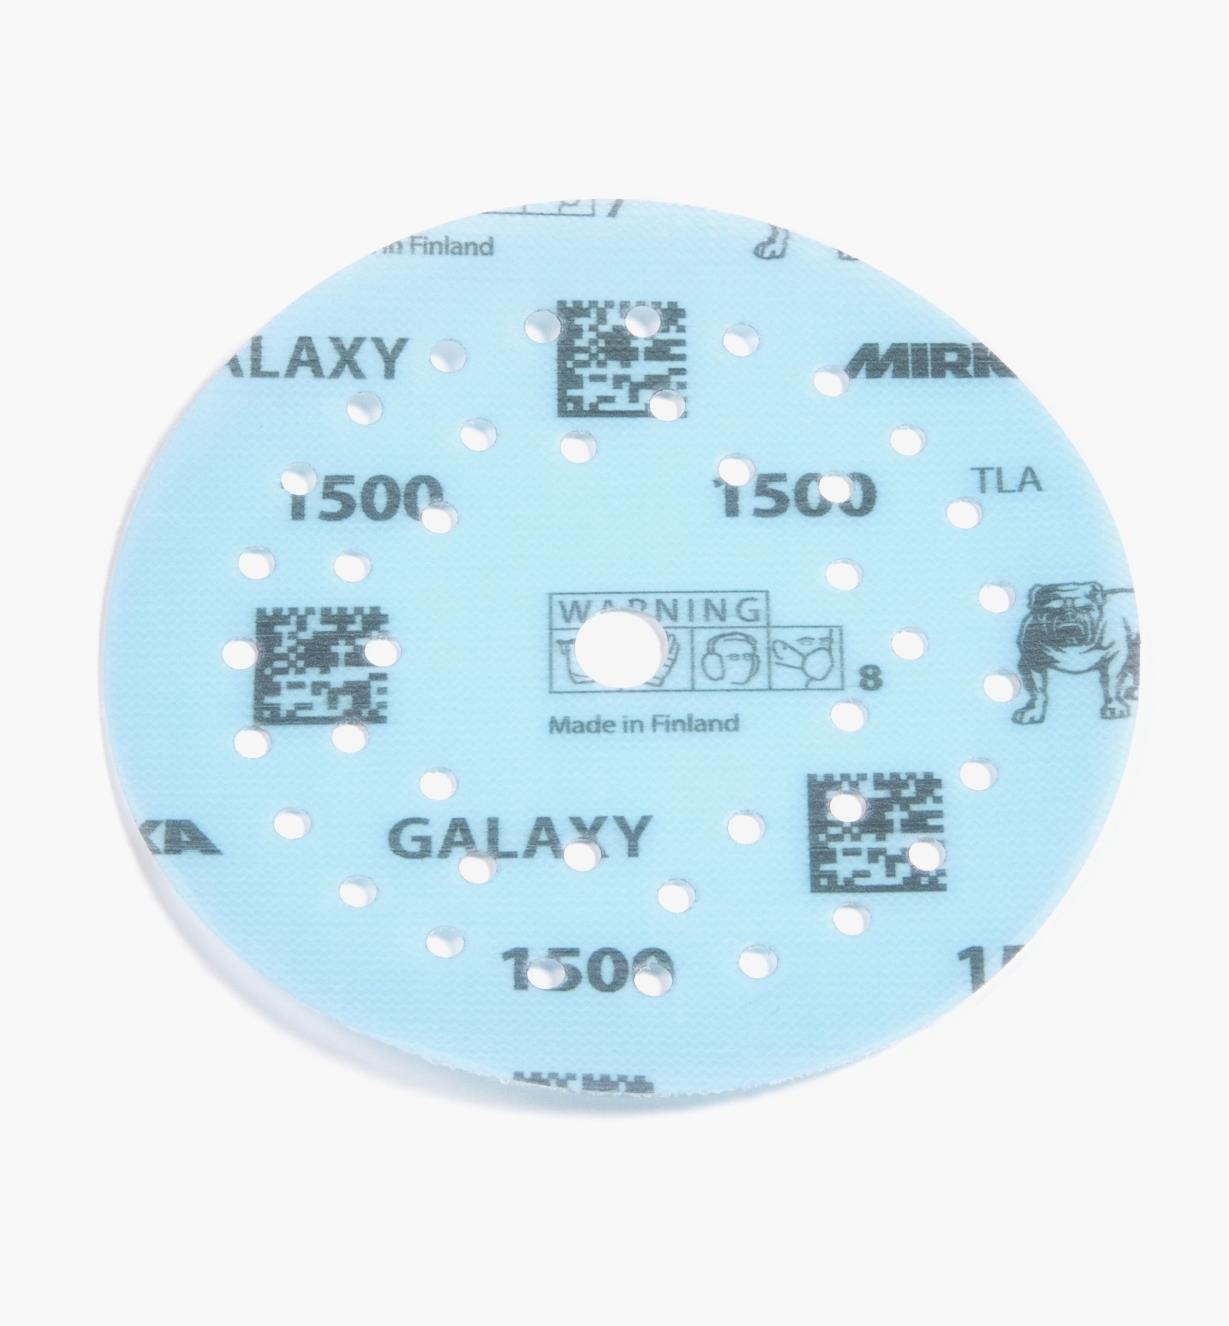 08K1356 - Disque abrasif autoagrippant Galaxy Multifit, 5 po, grain 1500, l'unité